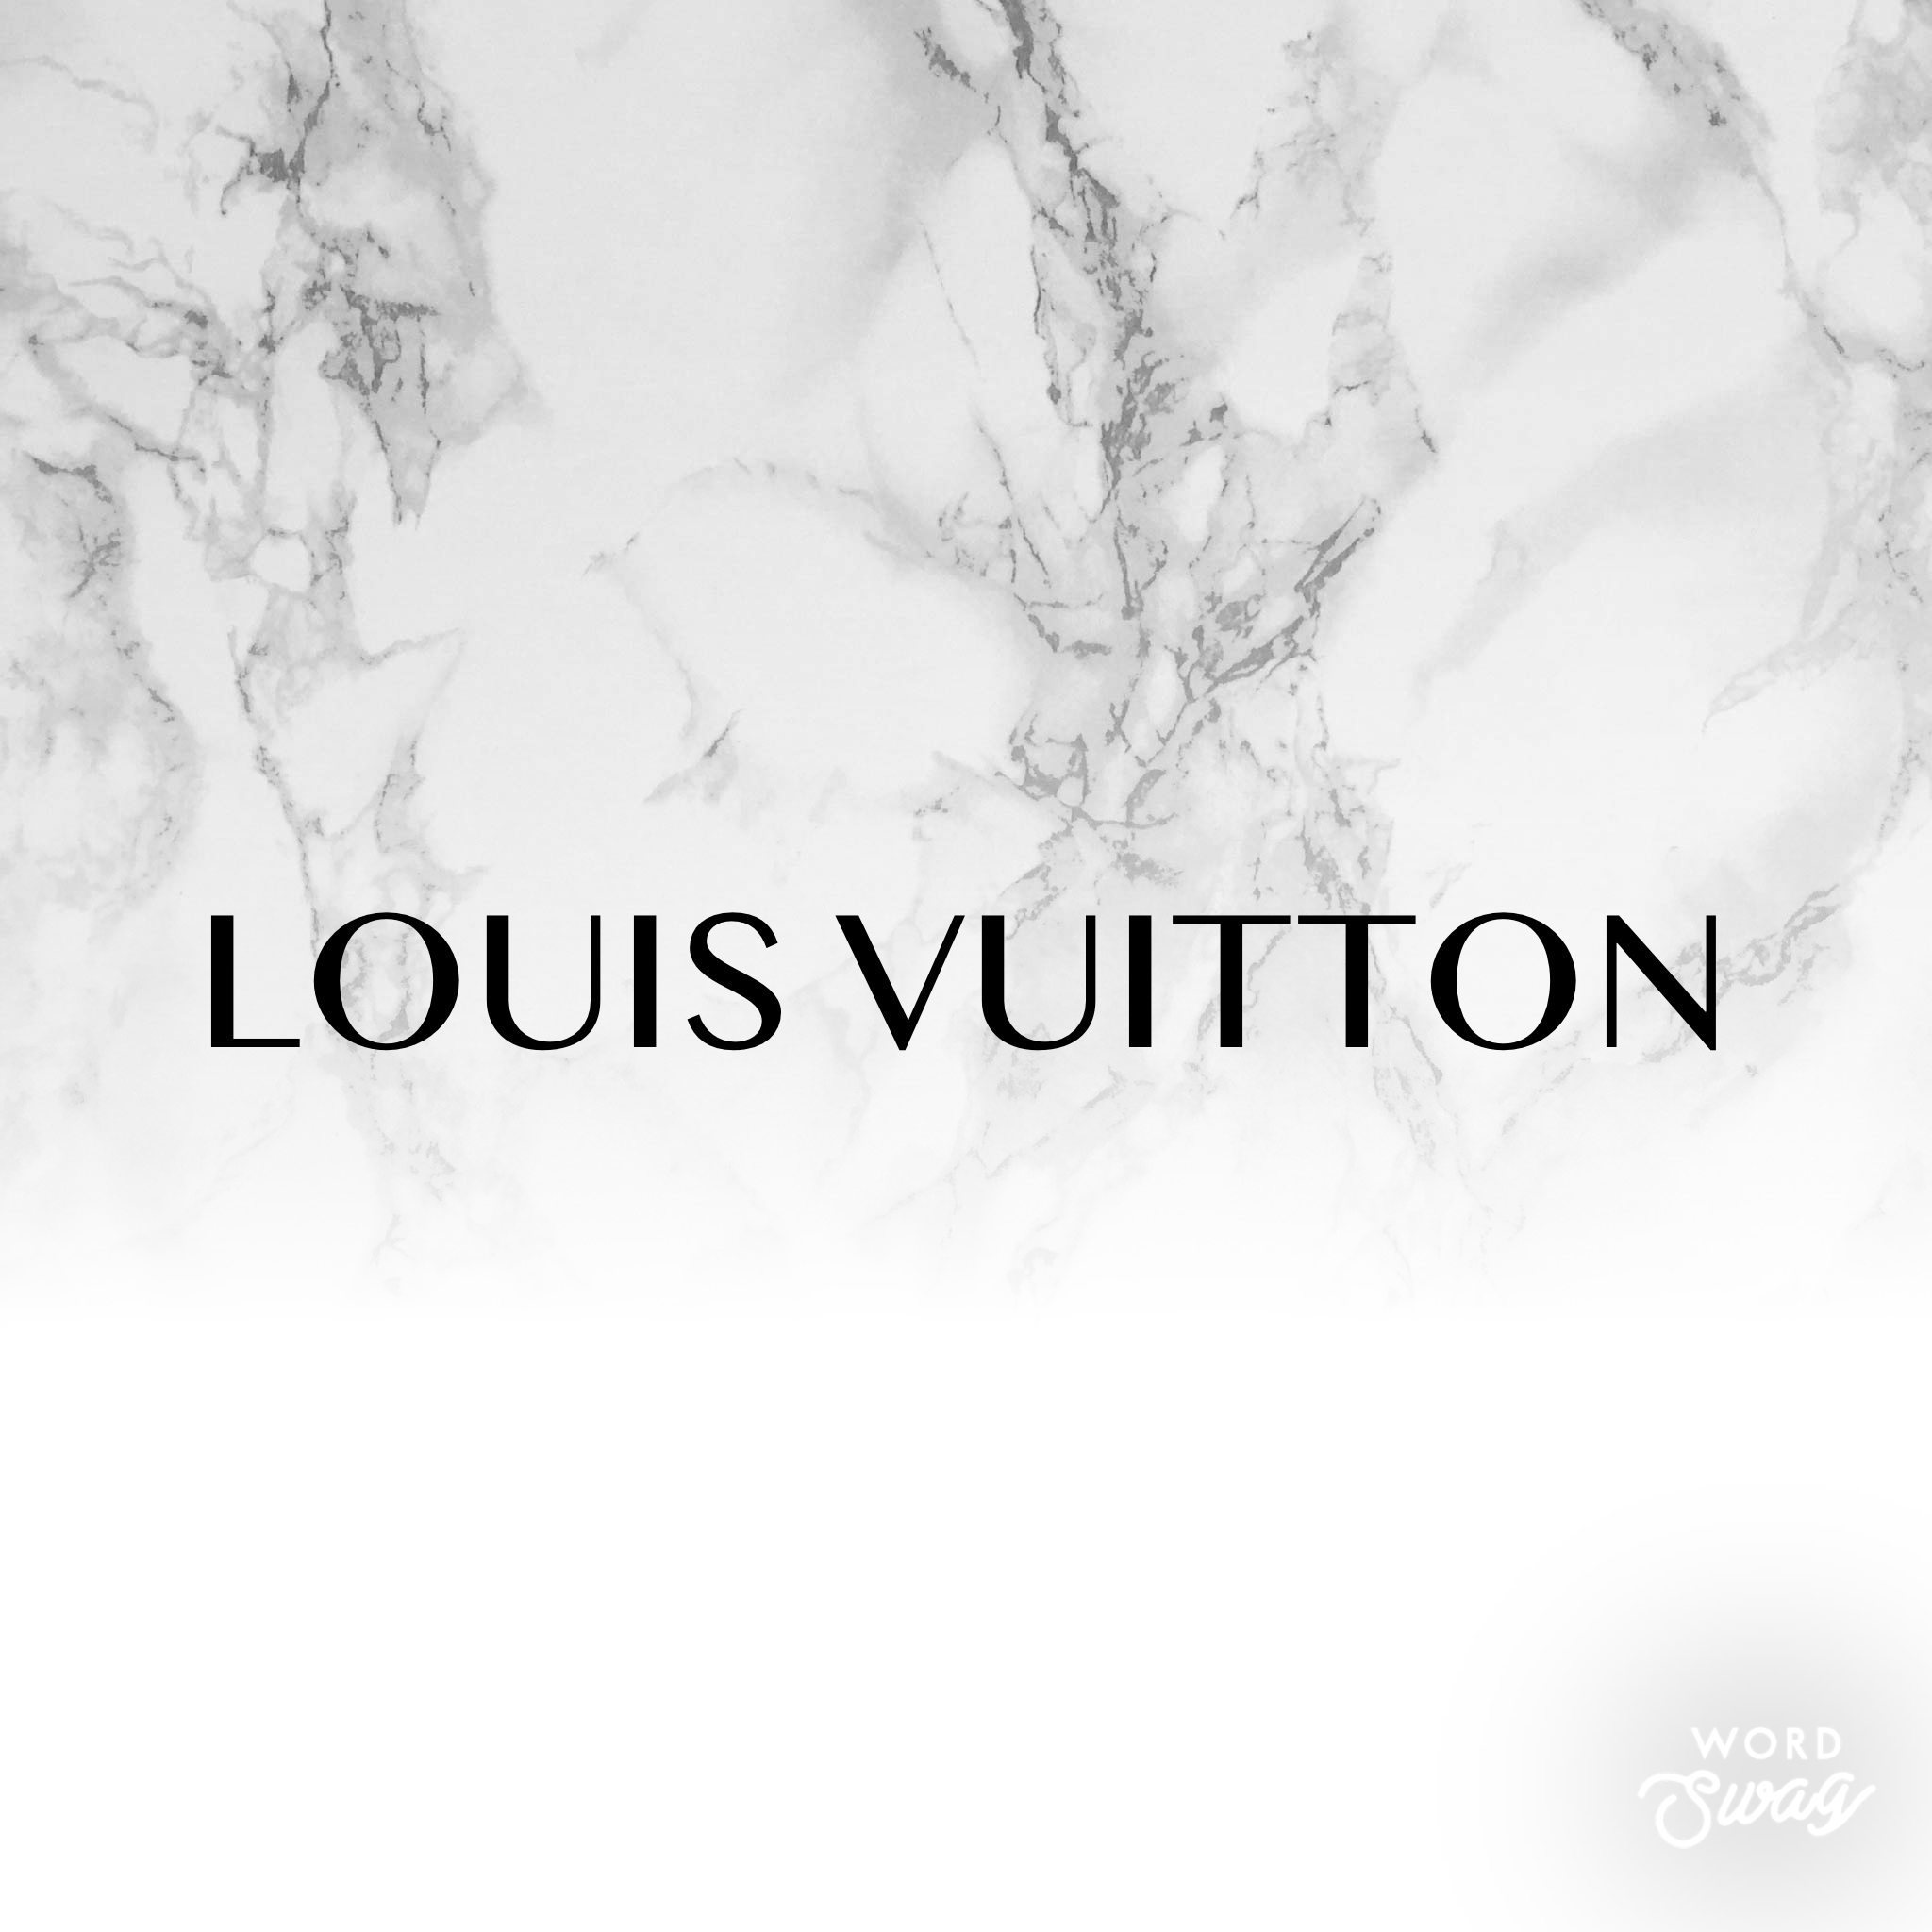 Louis Vuitton Case Study  Shop Security Shutters  HAG UK